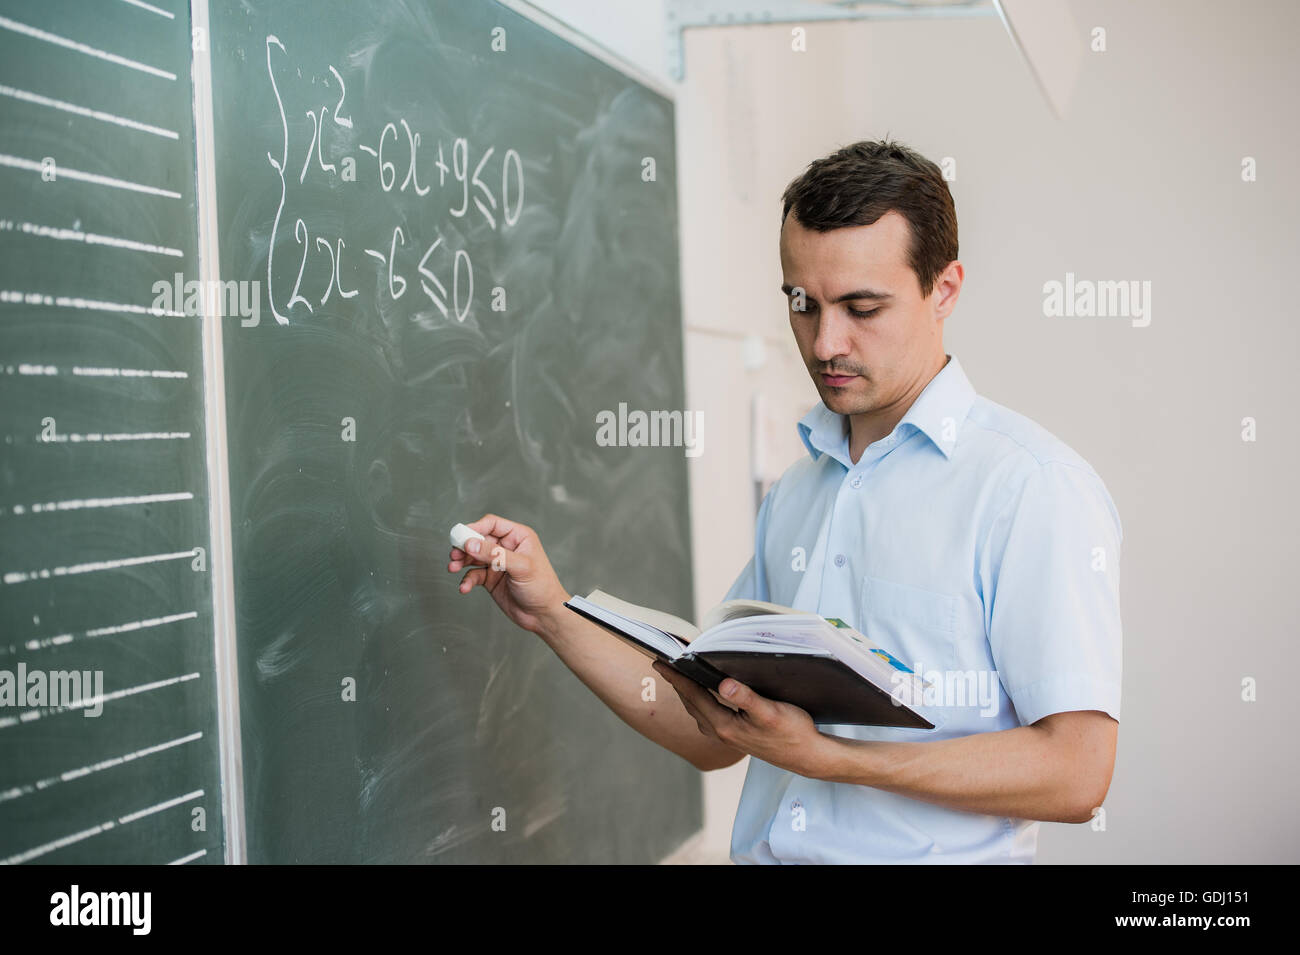 Junge männliche Lehrer oder Schüler mit Kreide schreiben an der Tafel im Klassenzimmer Stockfoto